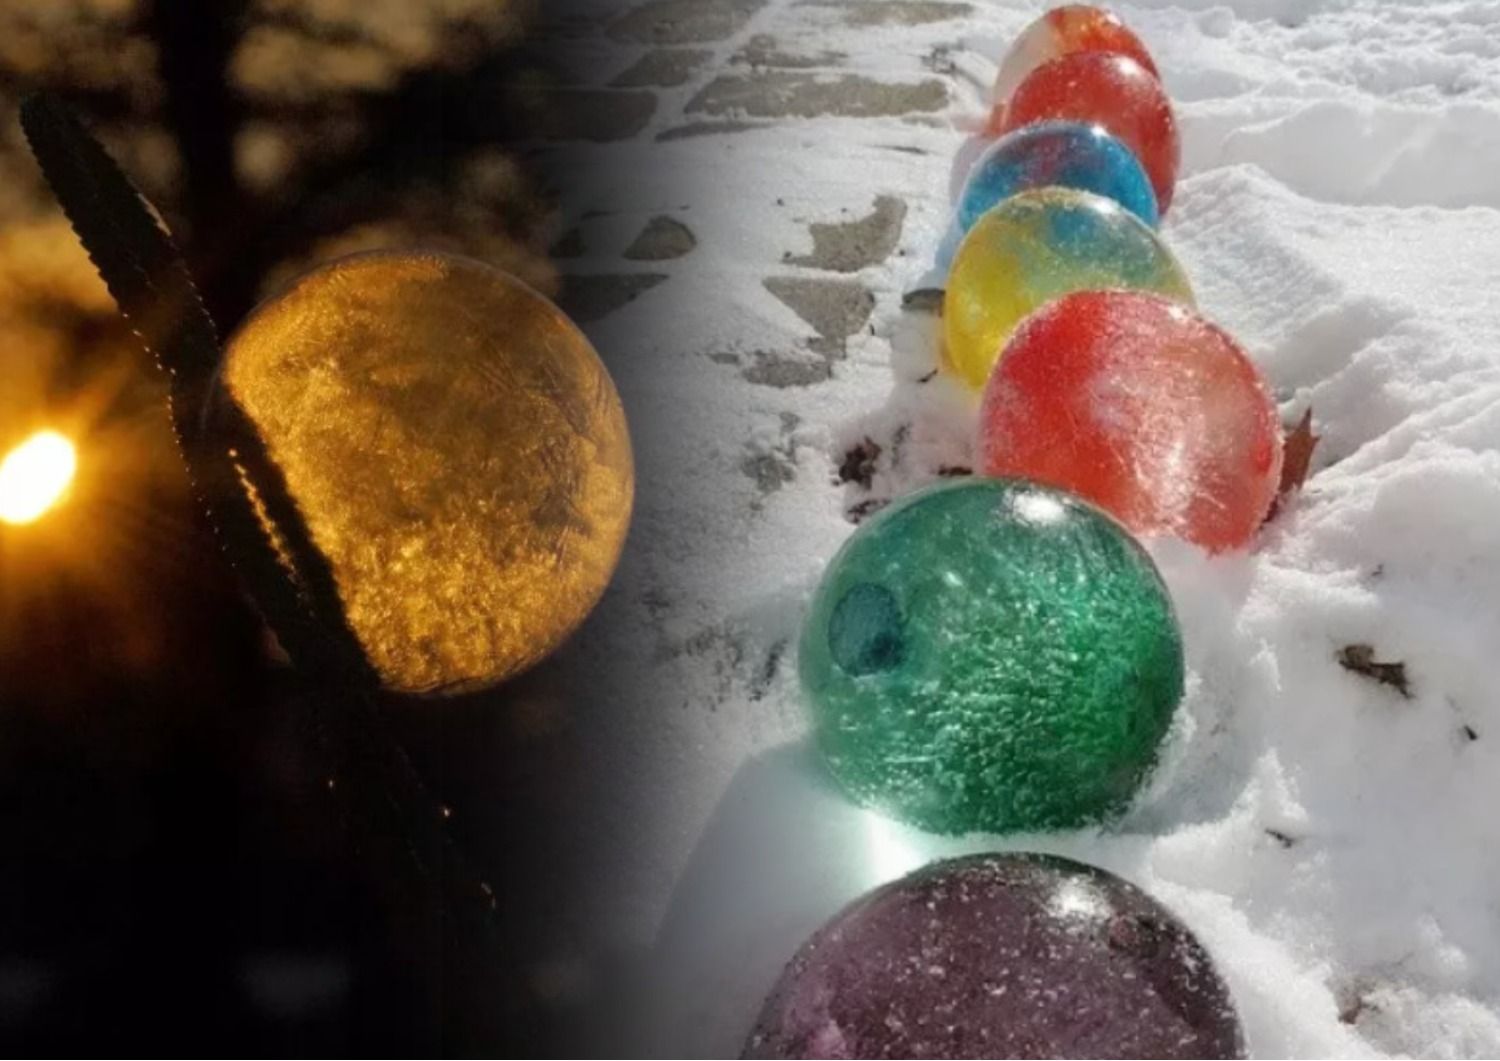 Зимние игры для детей - как интересно развлечься на улице - идеи - 24 канал - Образование